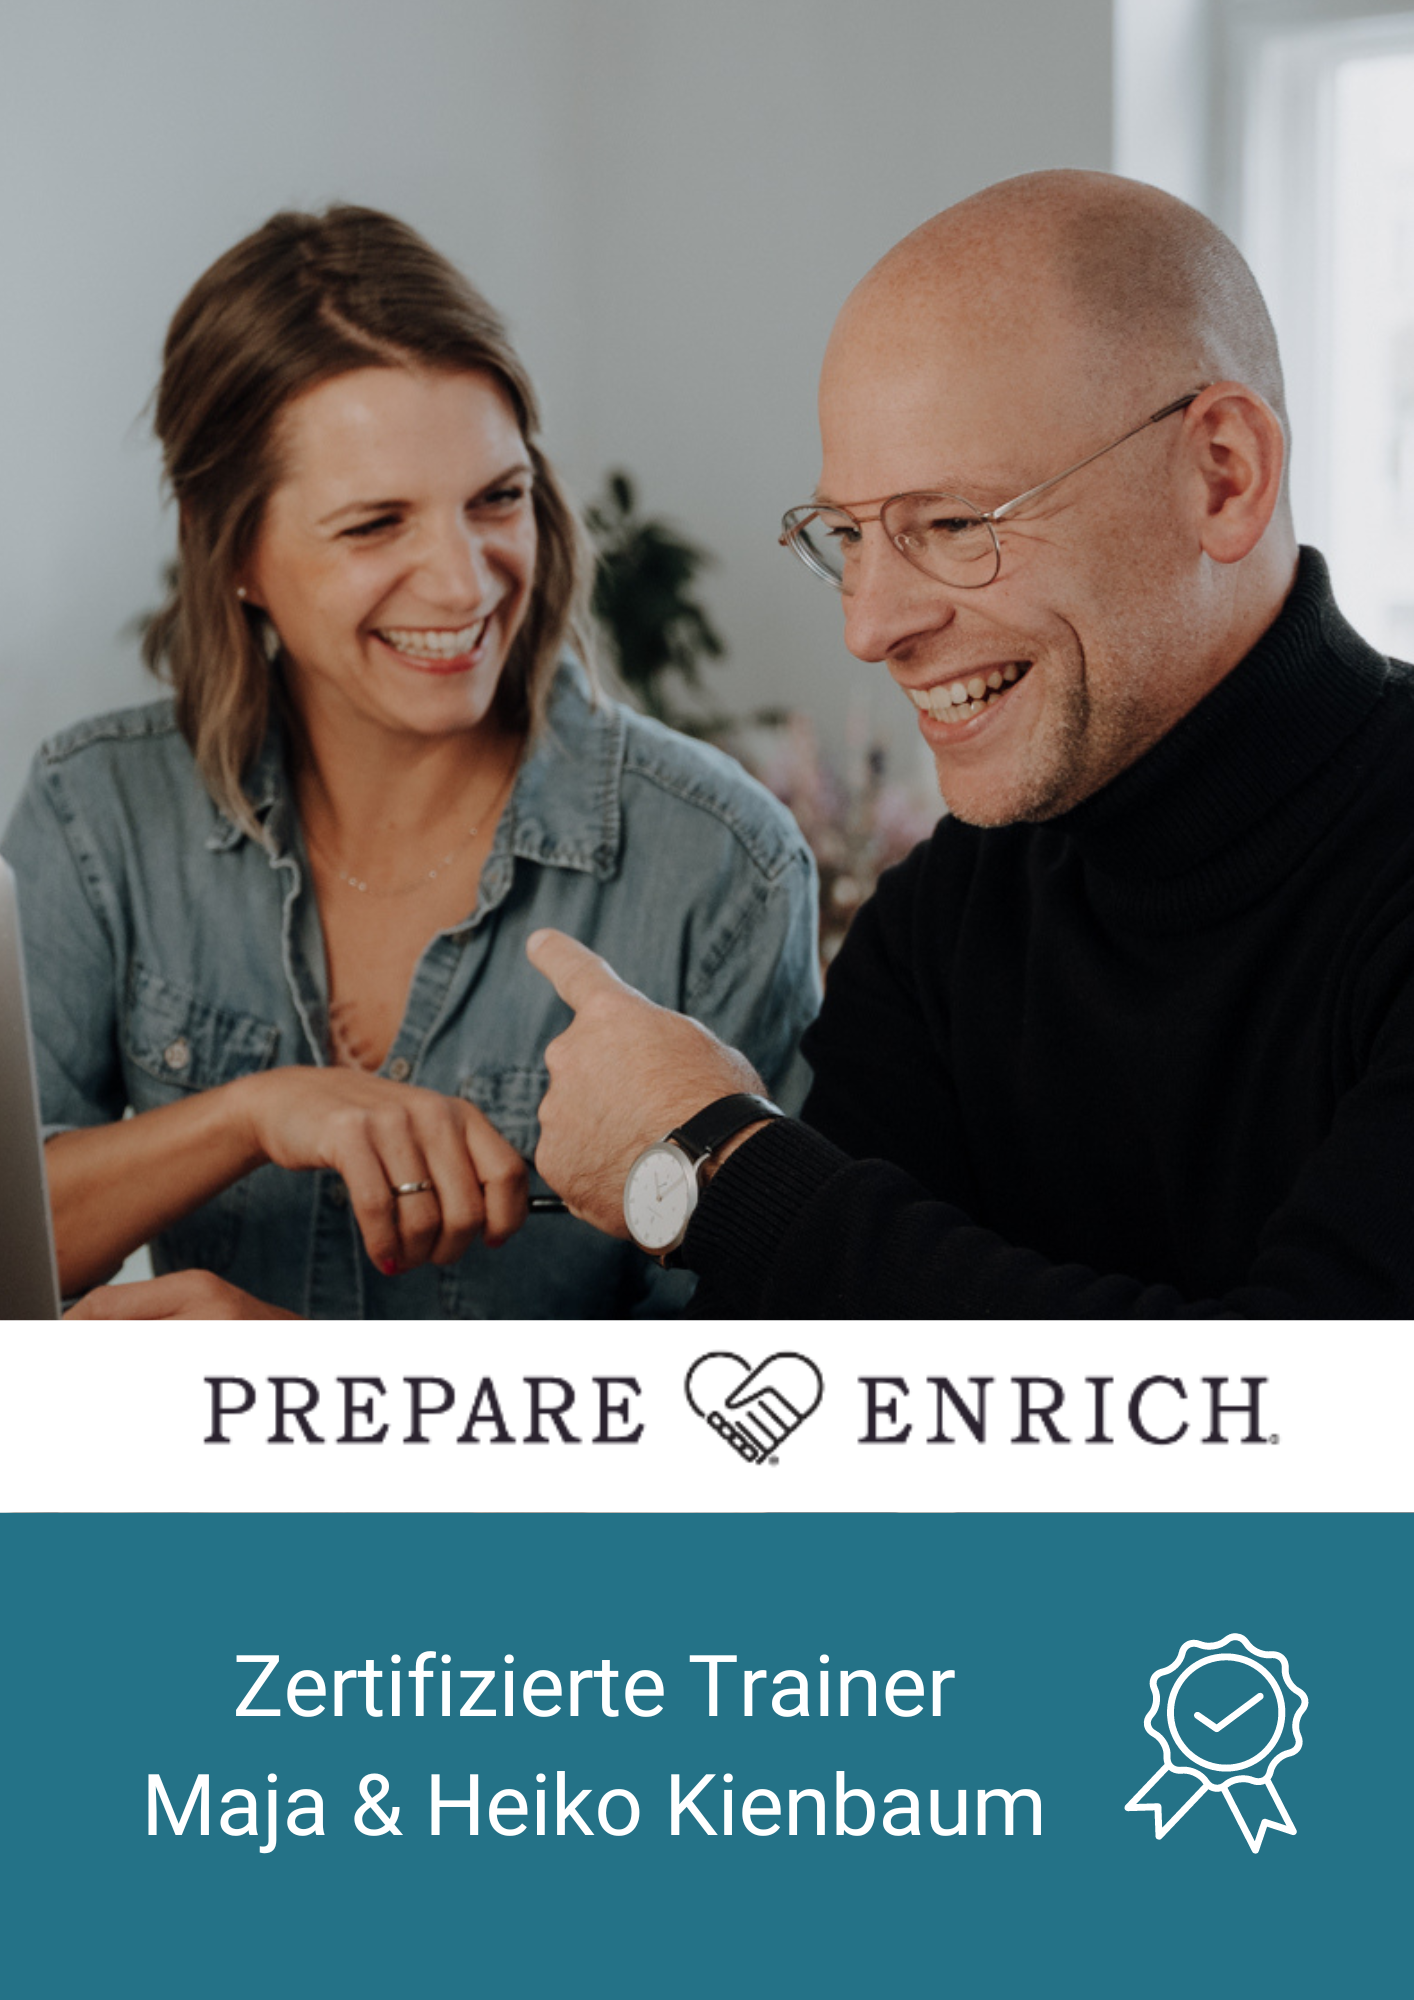 PREPARE ENRICH Kennenlern-Kurz-Webinar